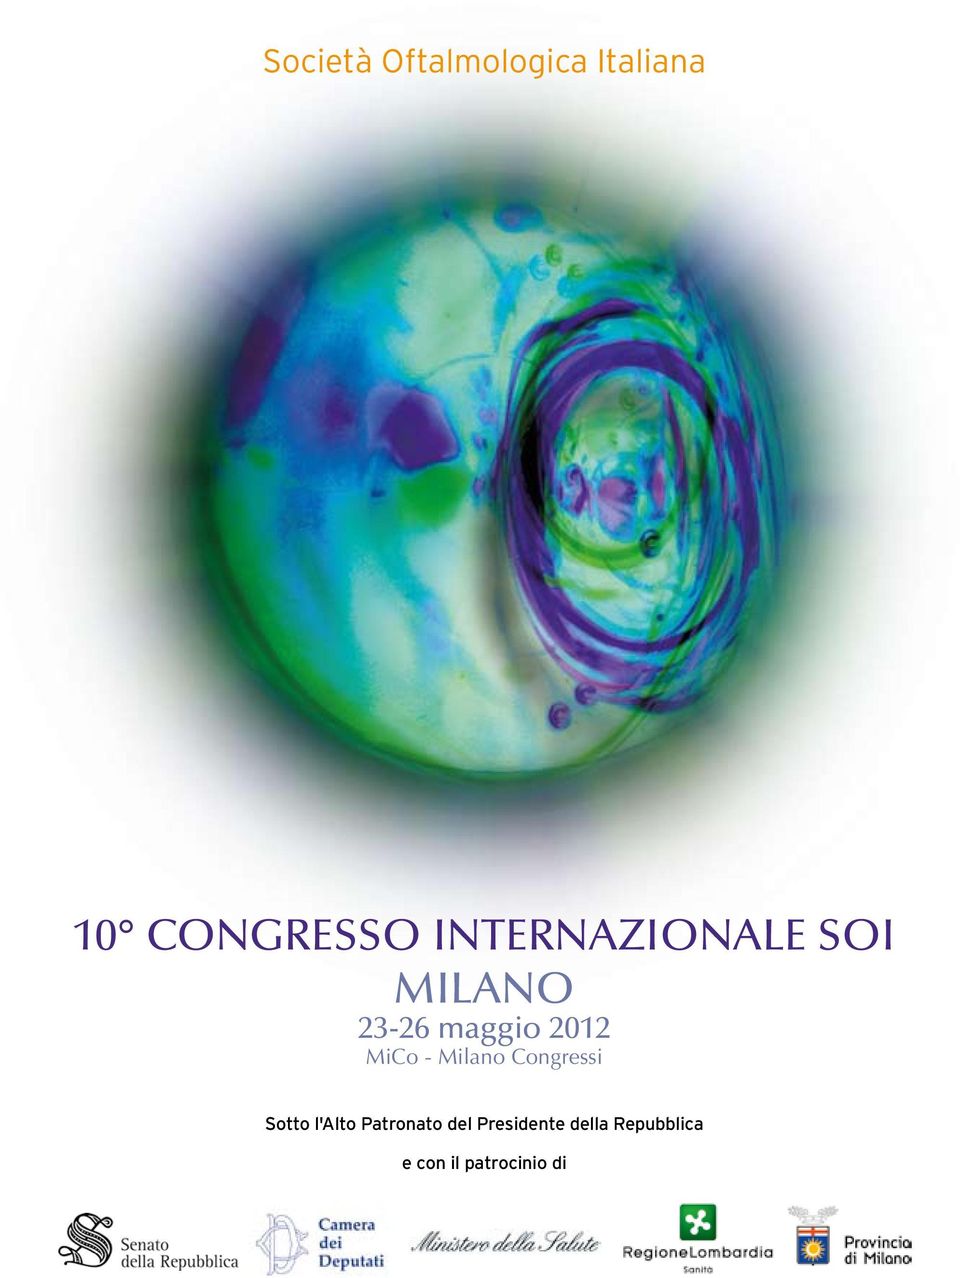 MiCo - Milano Congressi Sotto l'alto Patronato